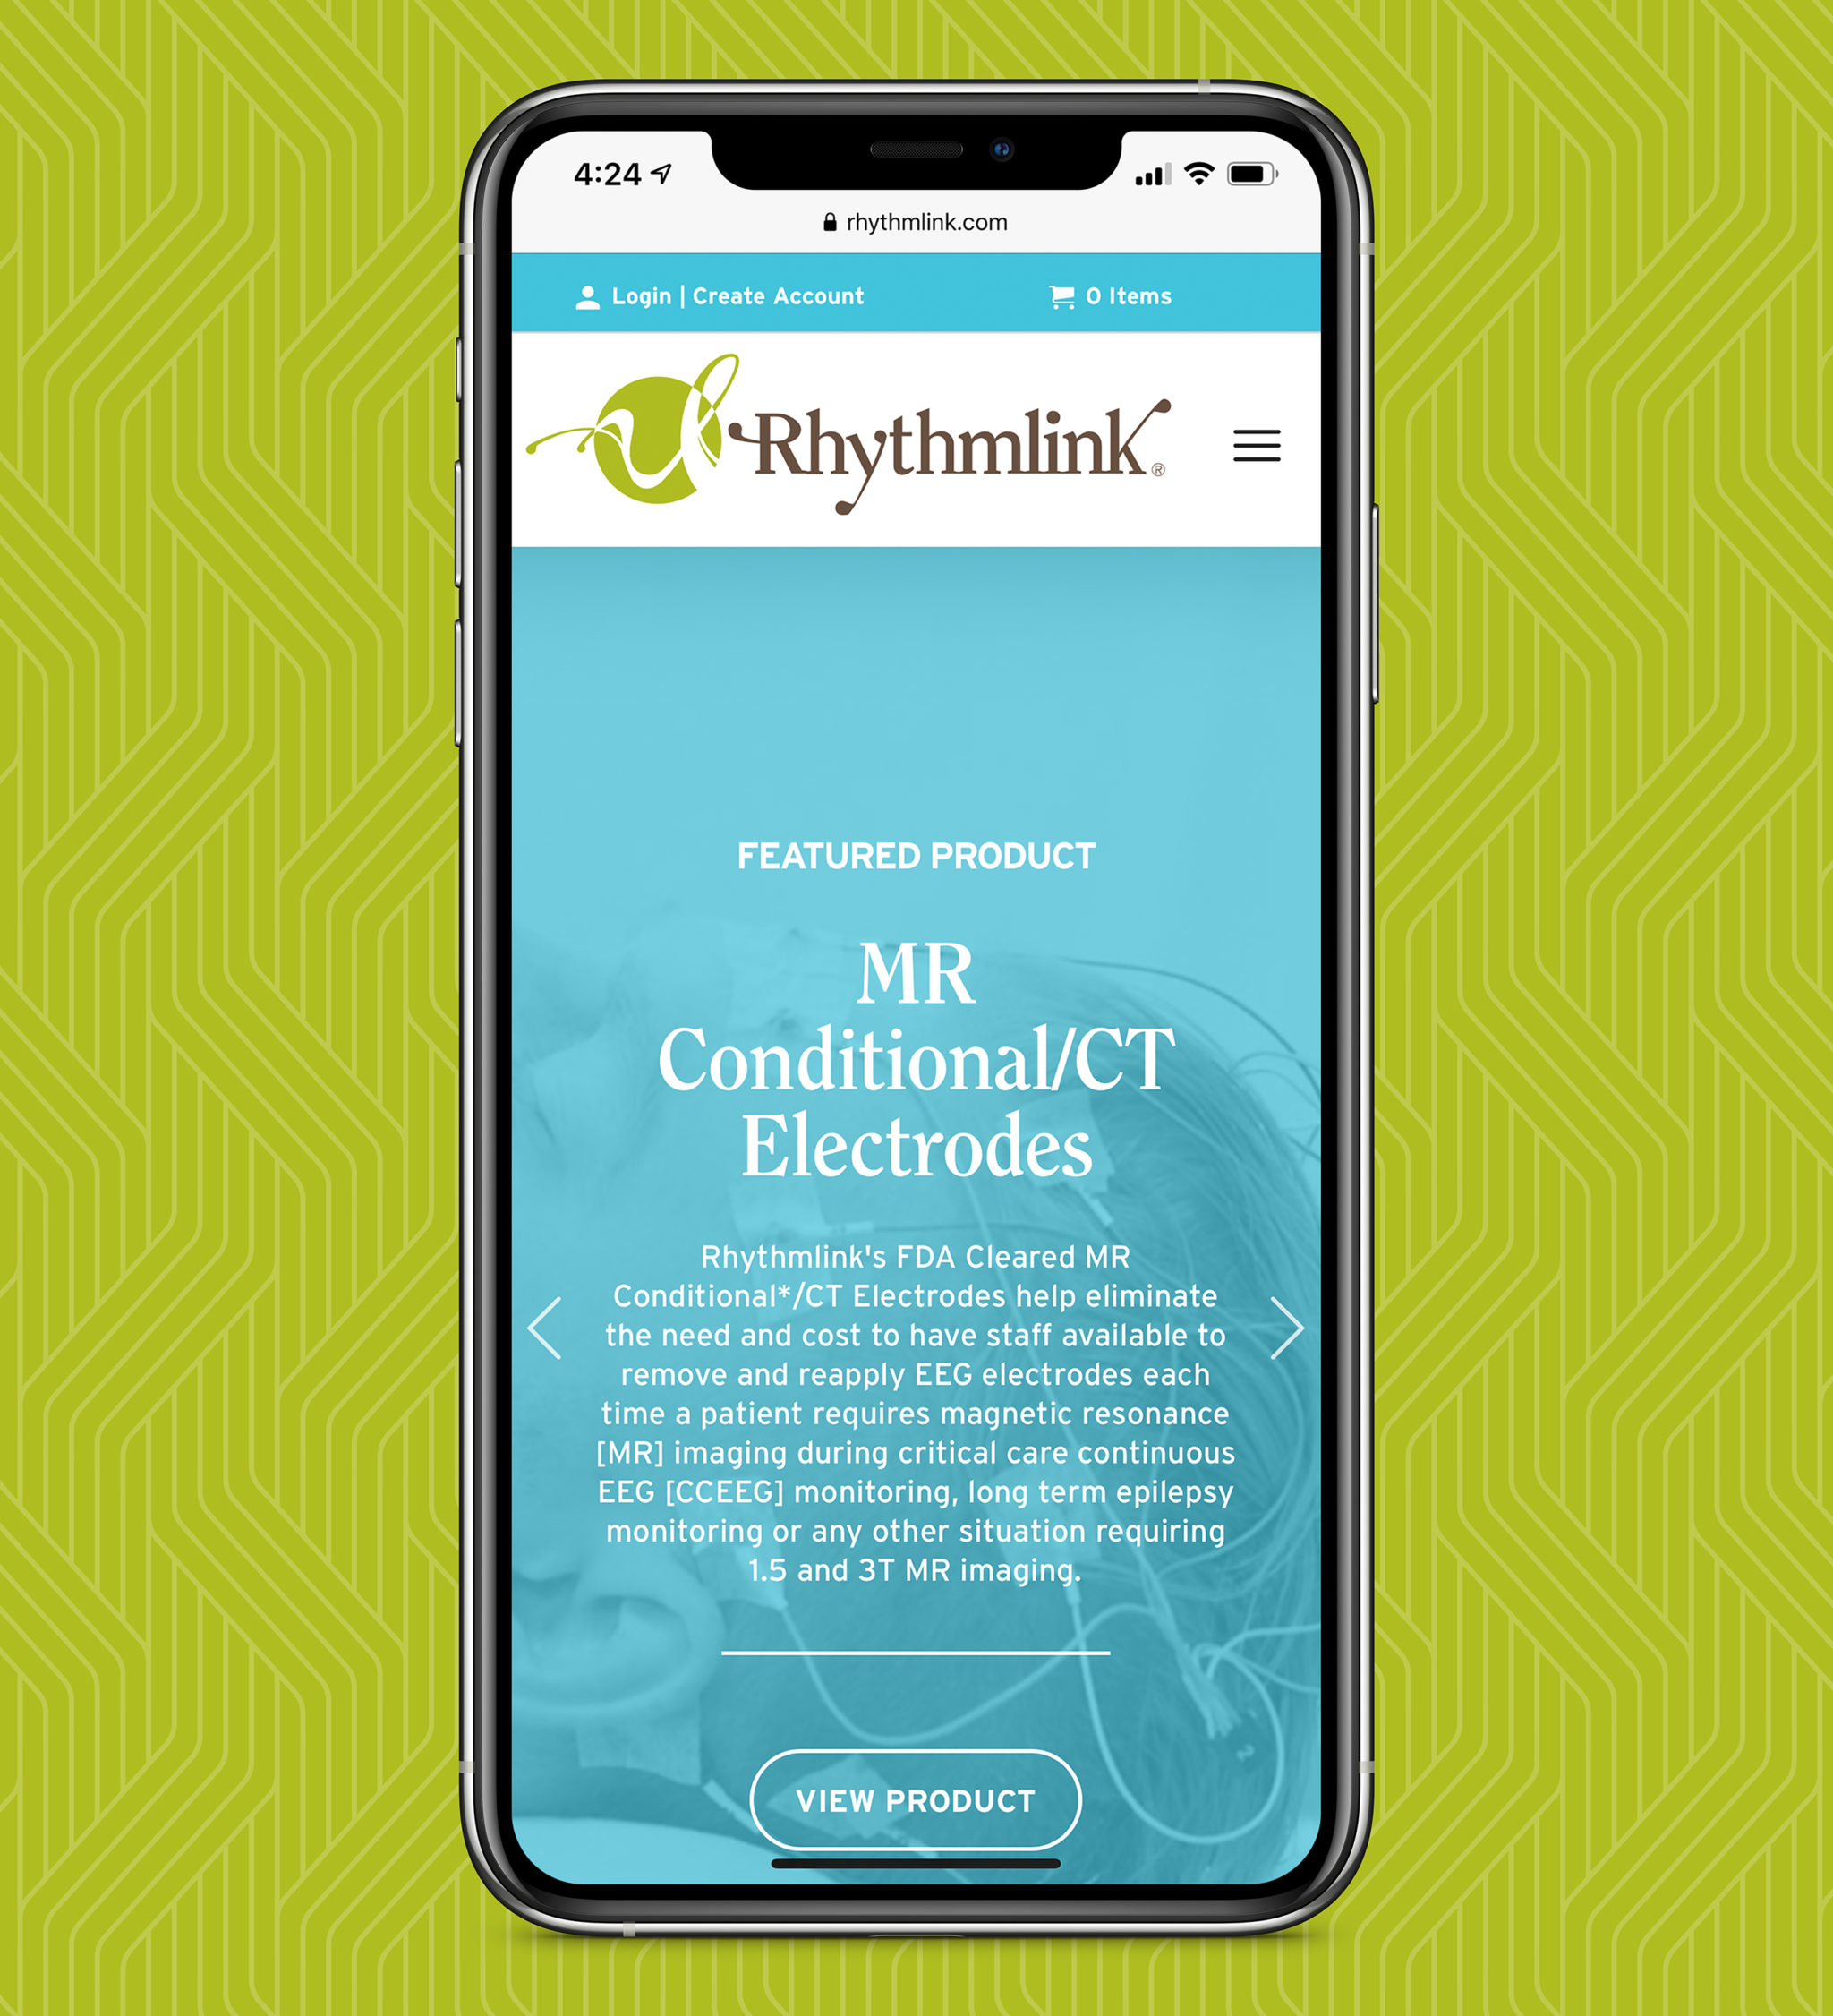 Mockup of Rhythmlink website on mobile